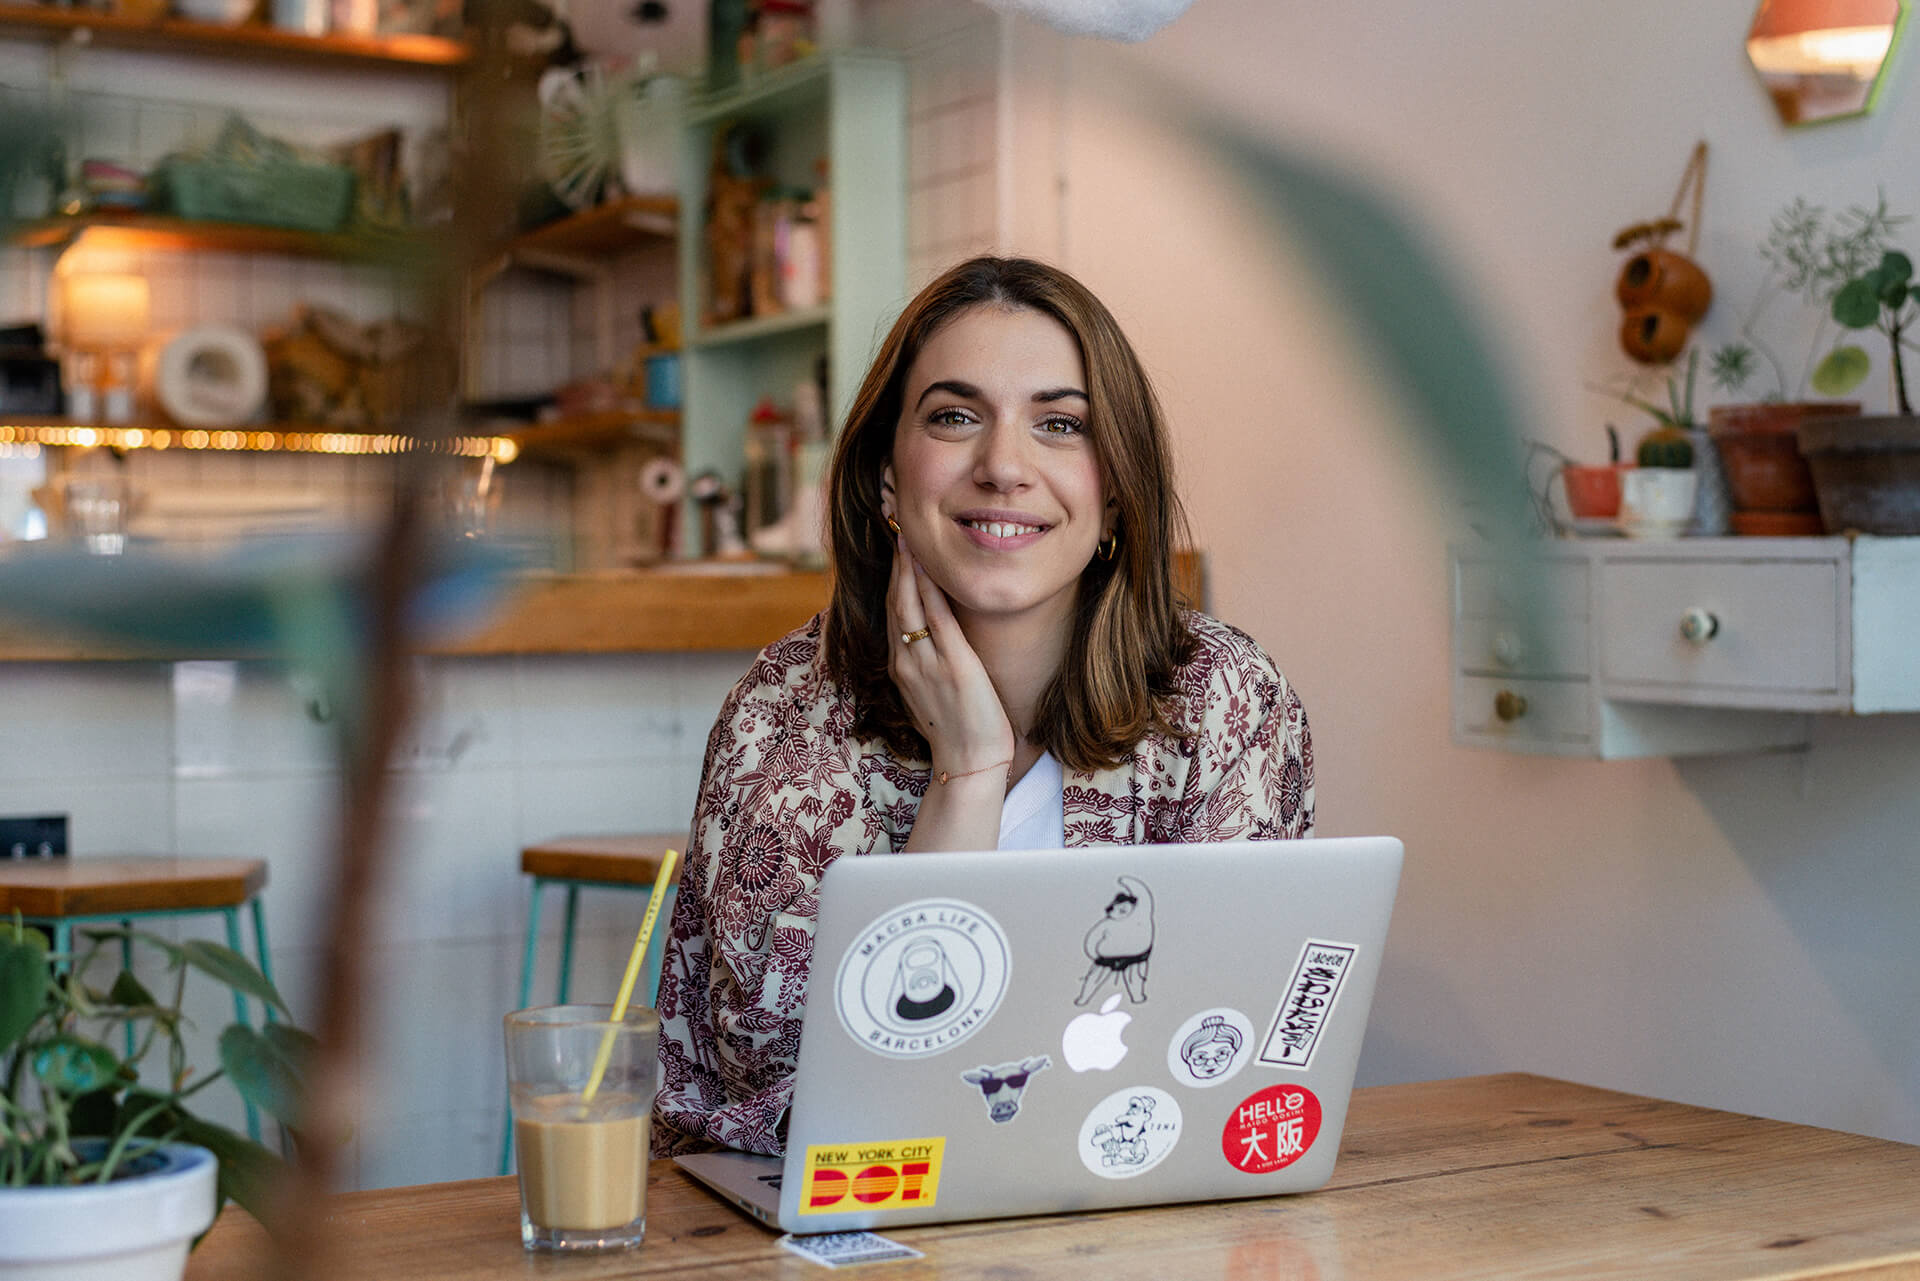 photo de profil de charlene dans un cafe avec l'ordinateur ouvert